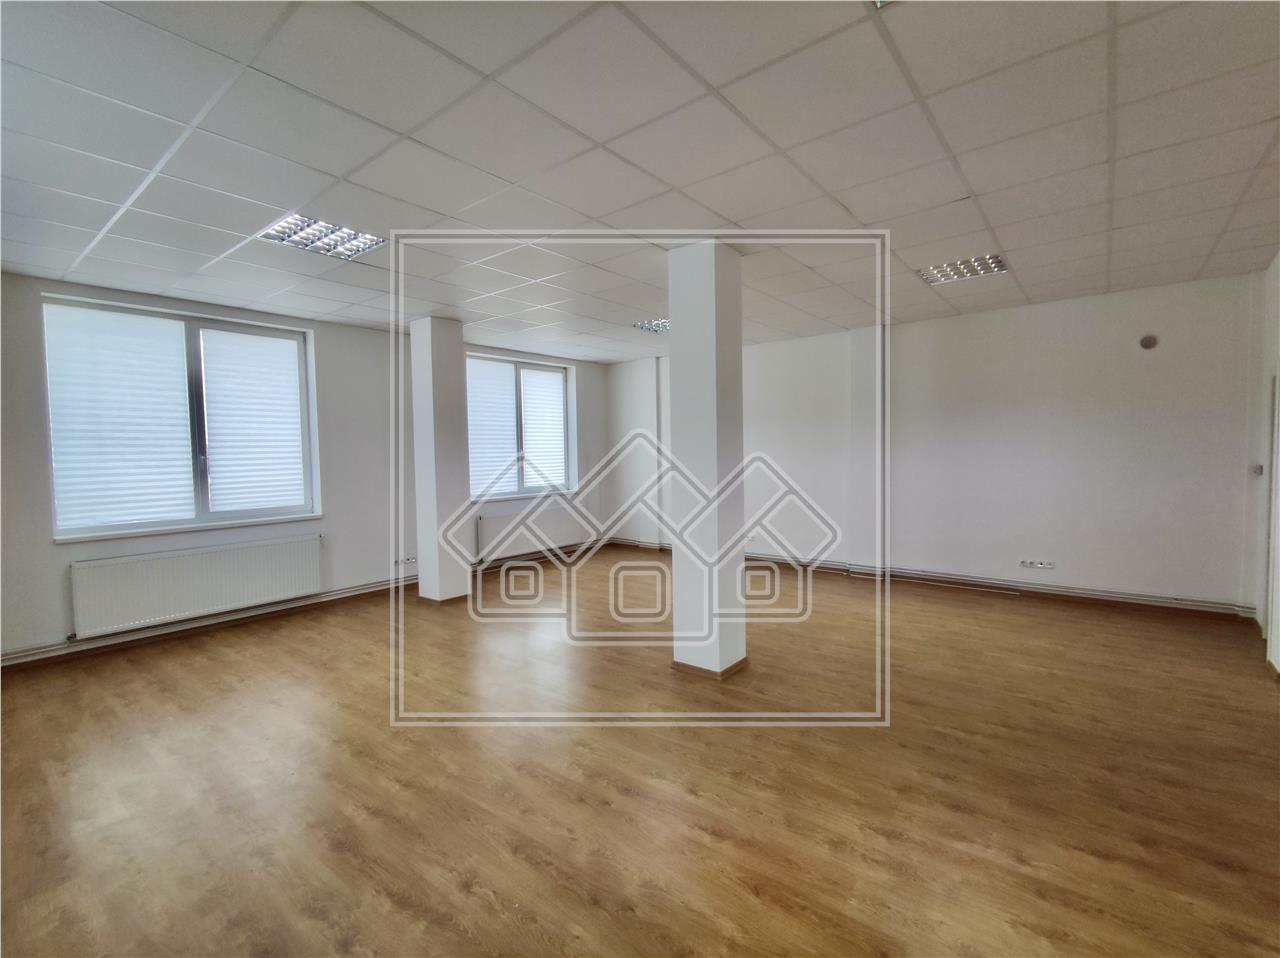 Office space for rent in Sibiu - Calea Turnisorului